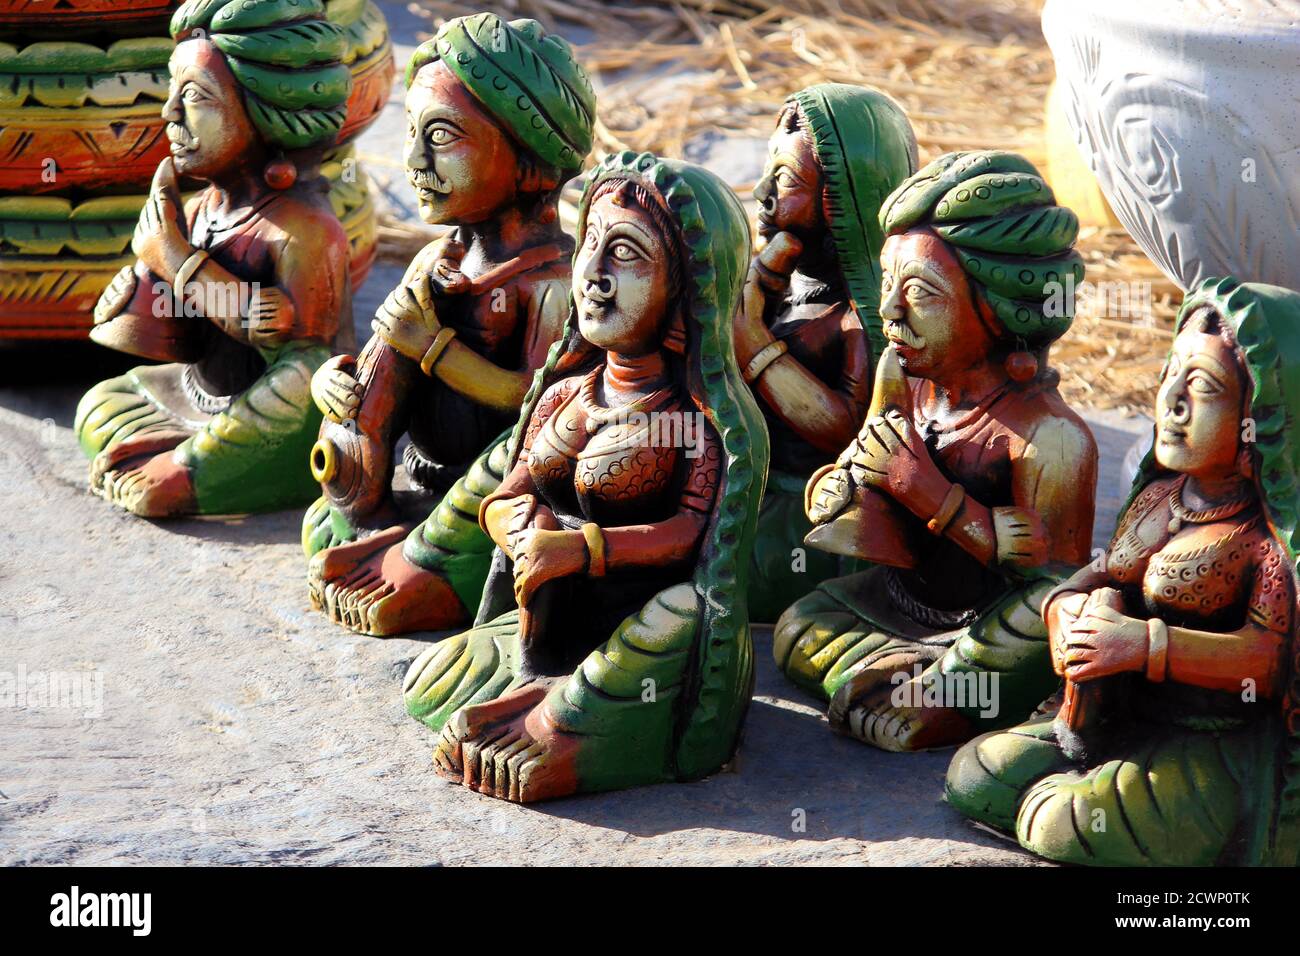 Art antique décoratif de musicien indien réalisé avec Earthen Mud, décoration traditionnelle en argile faite à la main sur le marché indien Banque D'Images